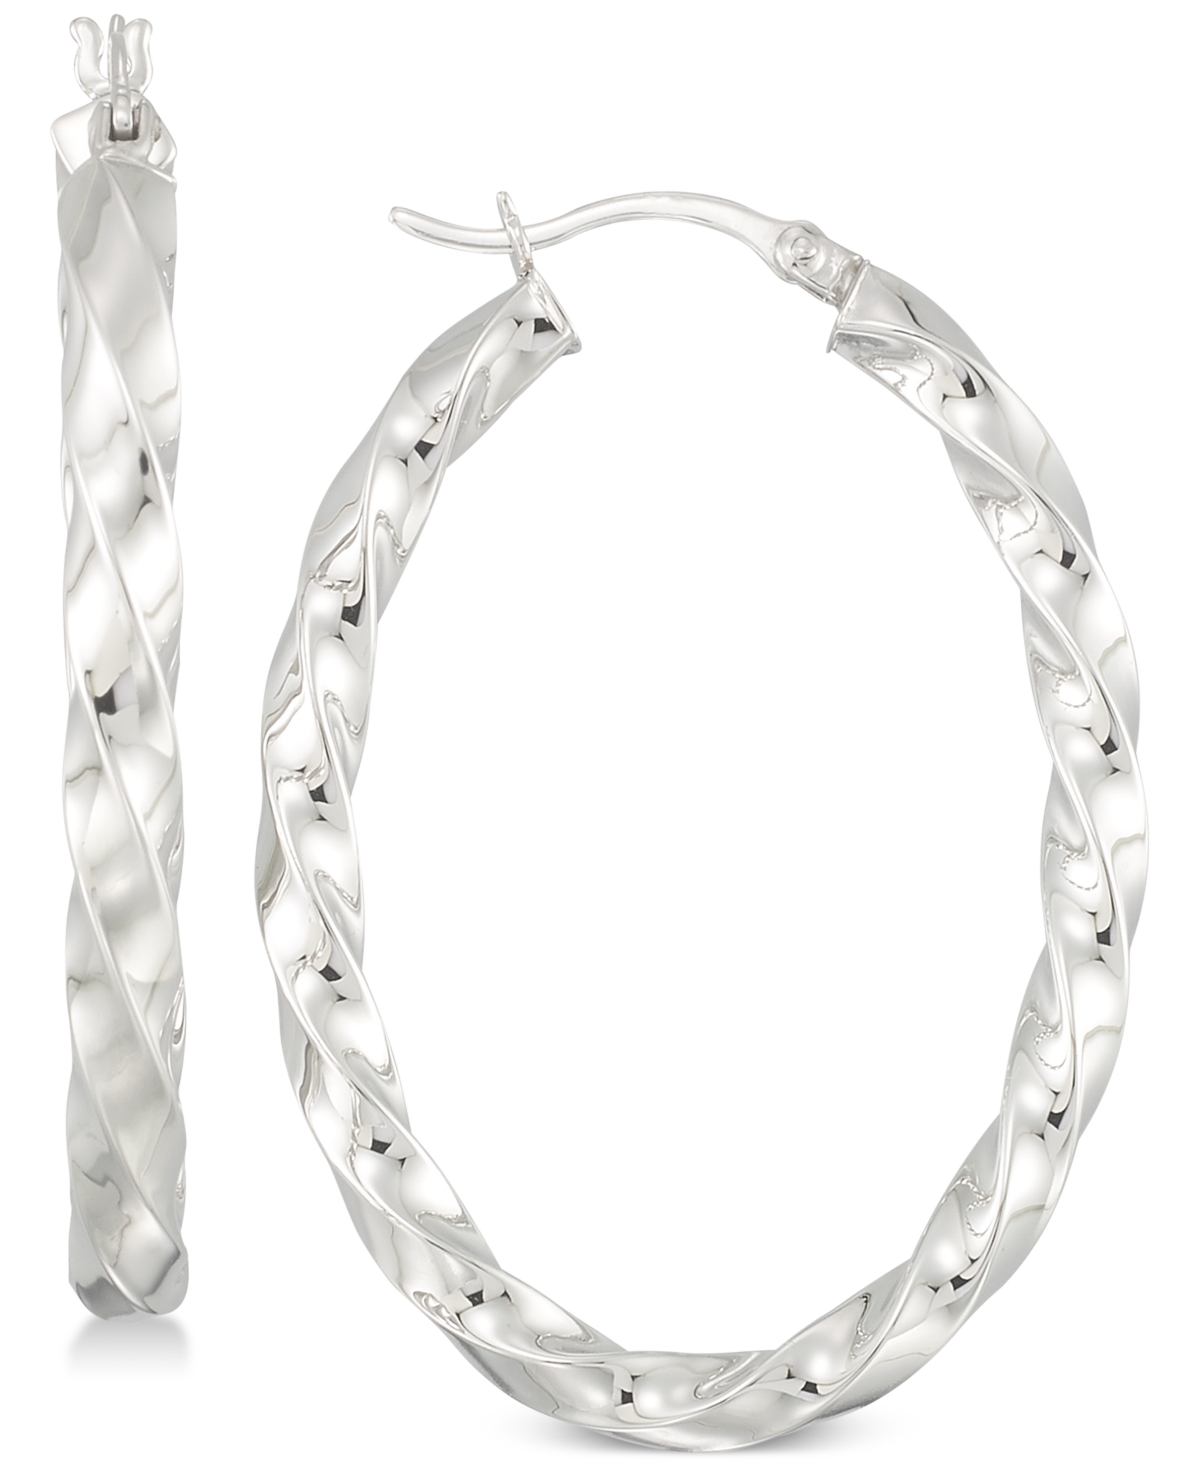 Textured Hoop Earrings in Sterling Silver - Silver